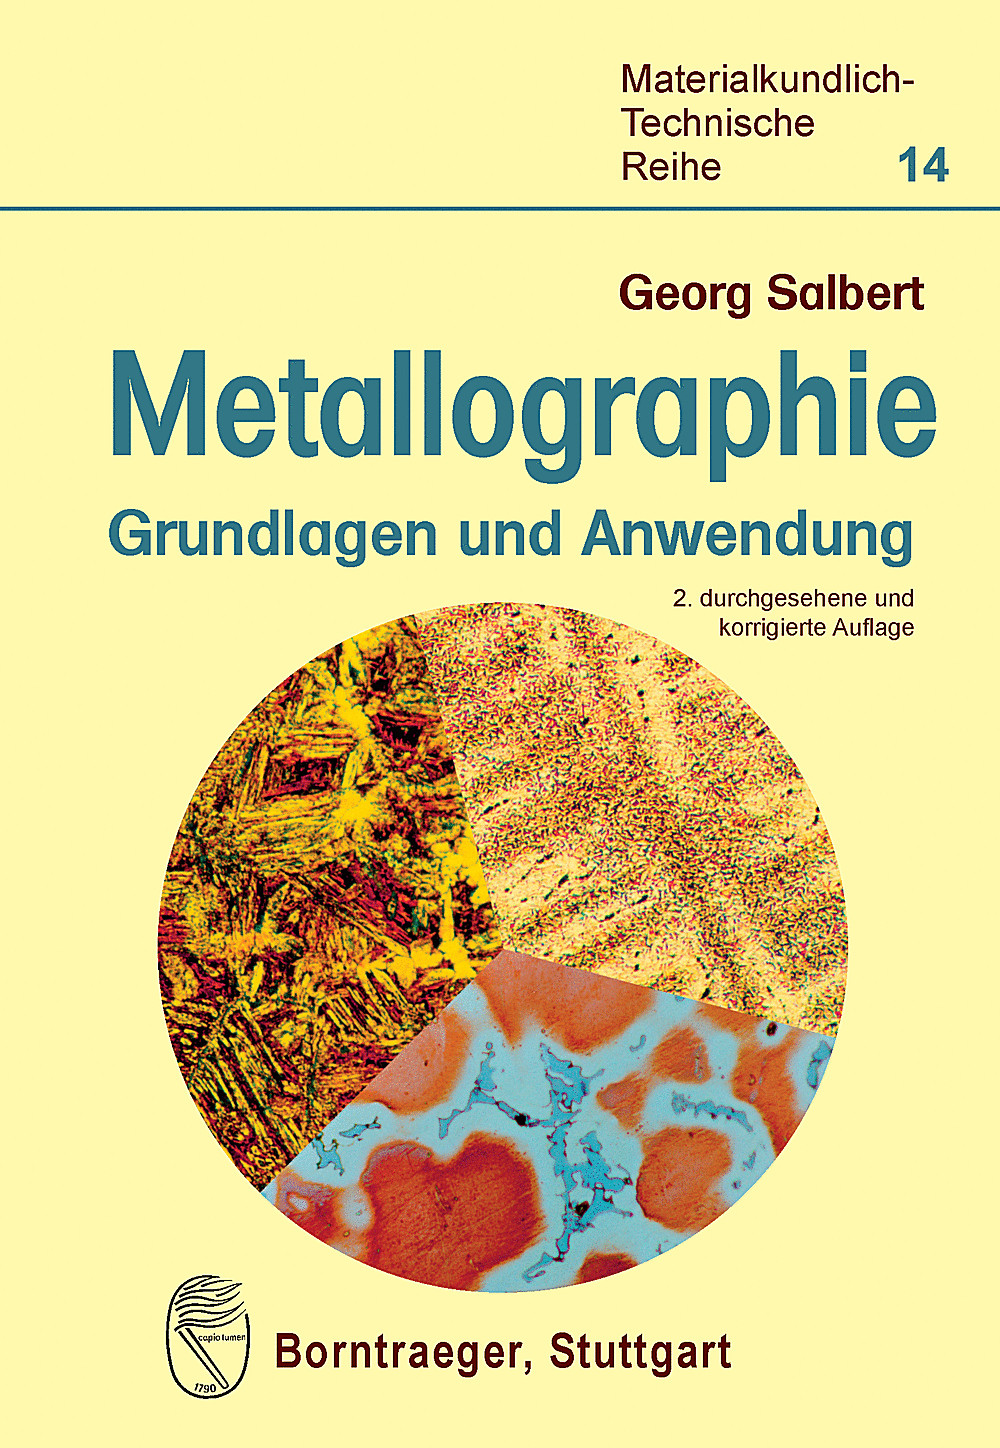 Metallographie Georg Salbert - Afbeelding 1 van 1